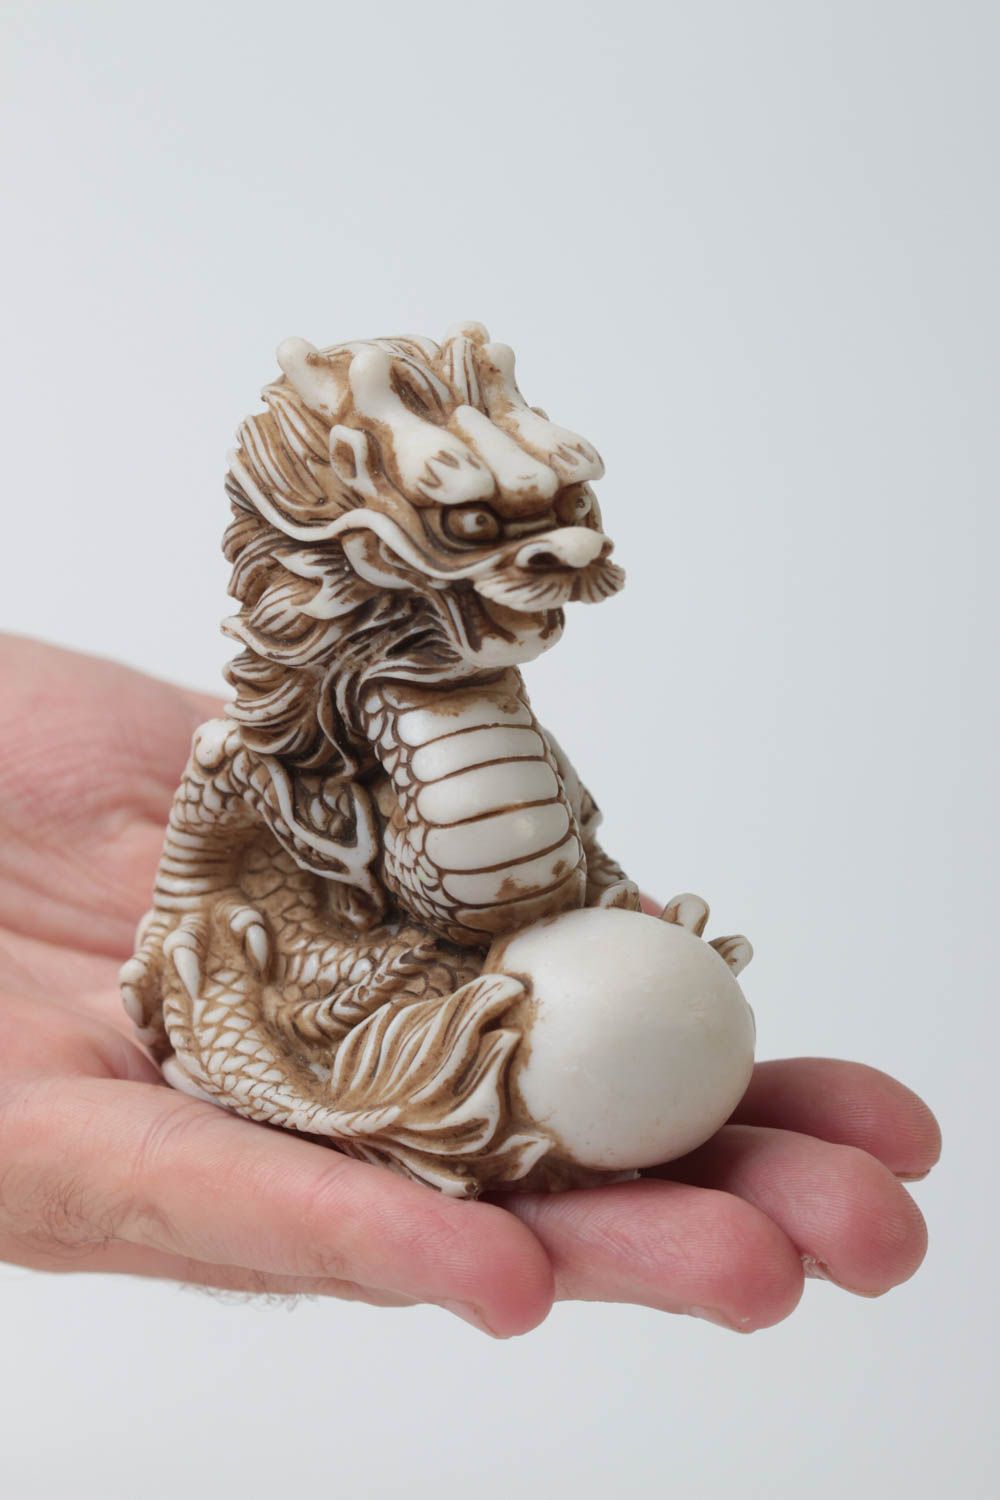 Handmade small figurine unusual statuette in Eastern style dragon statuette photo 5